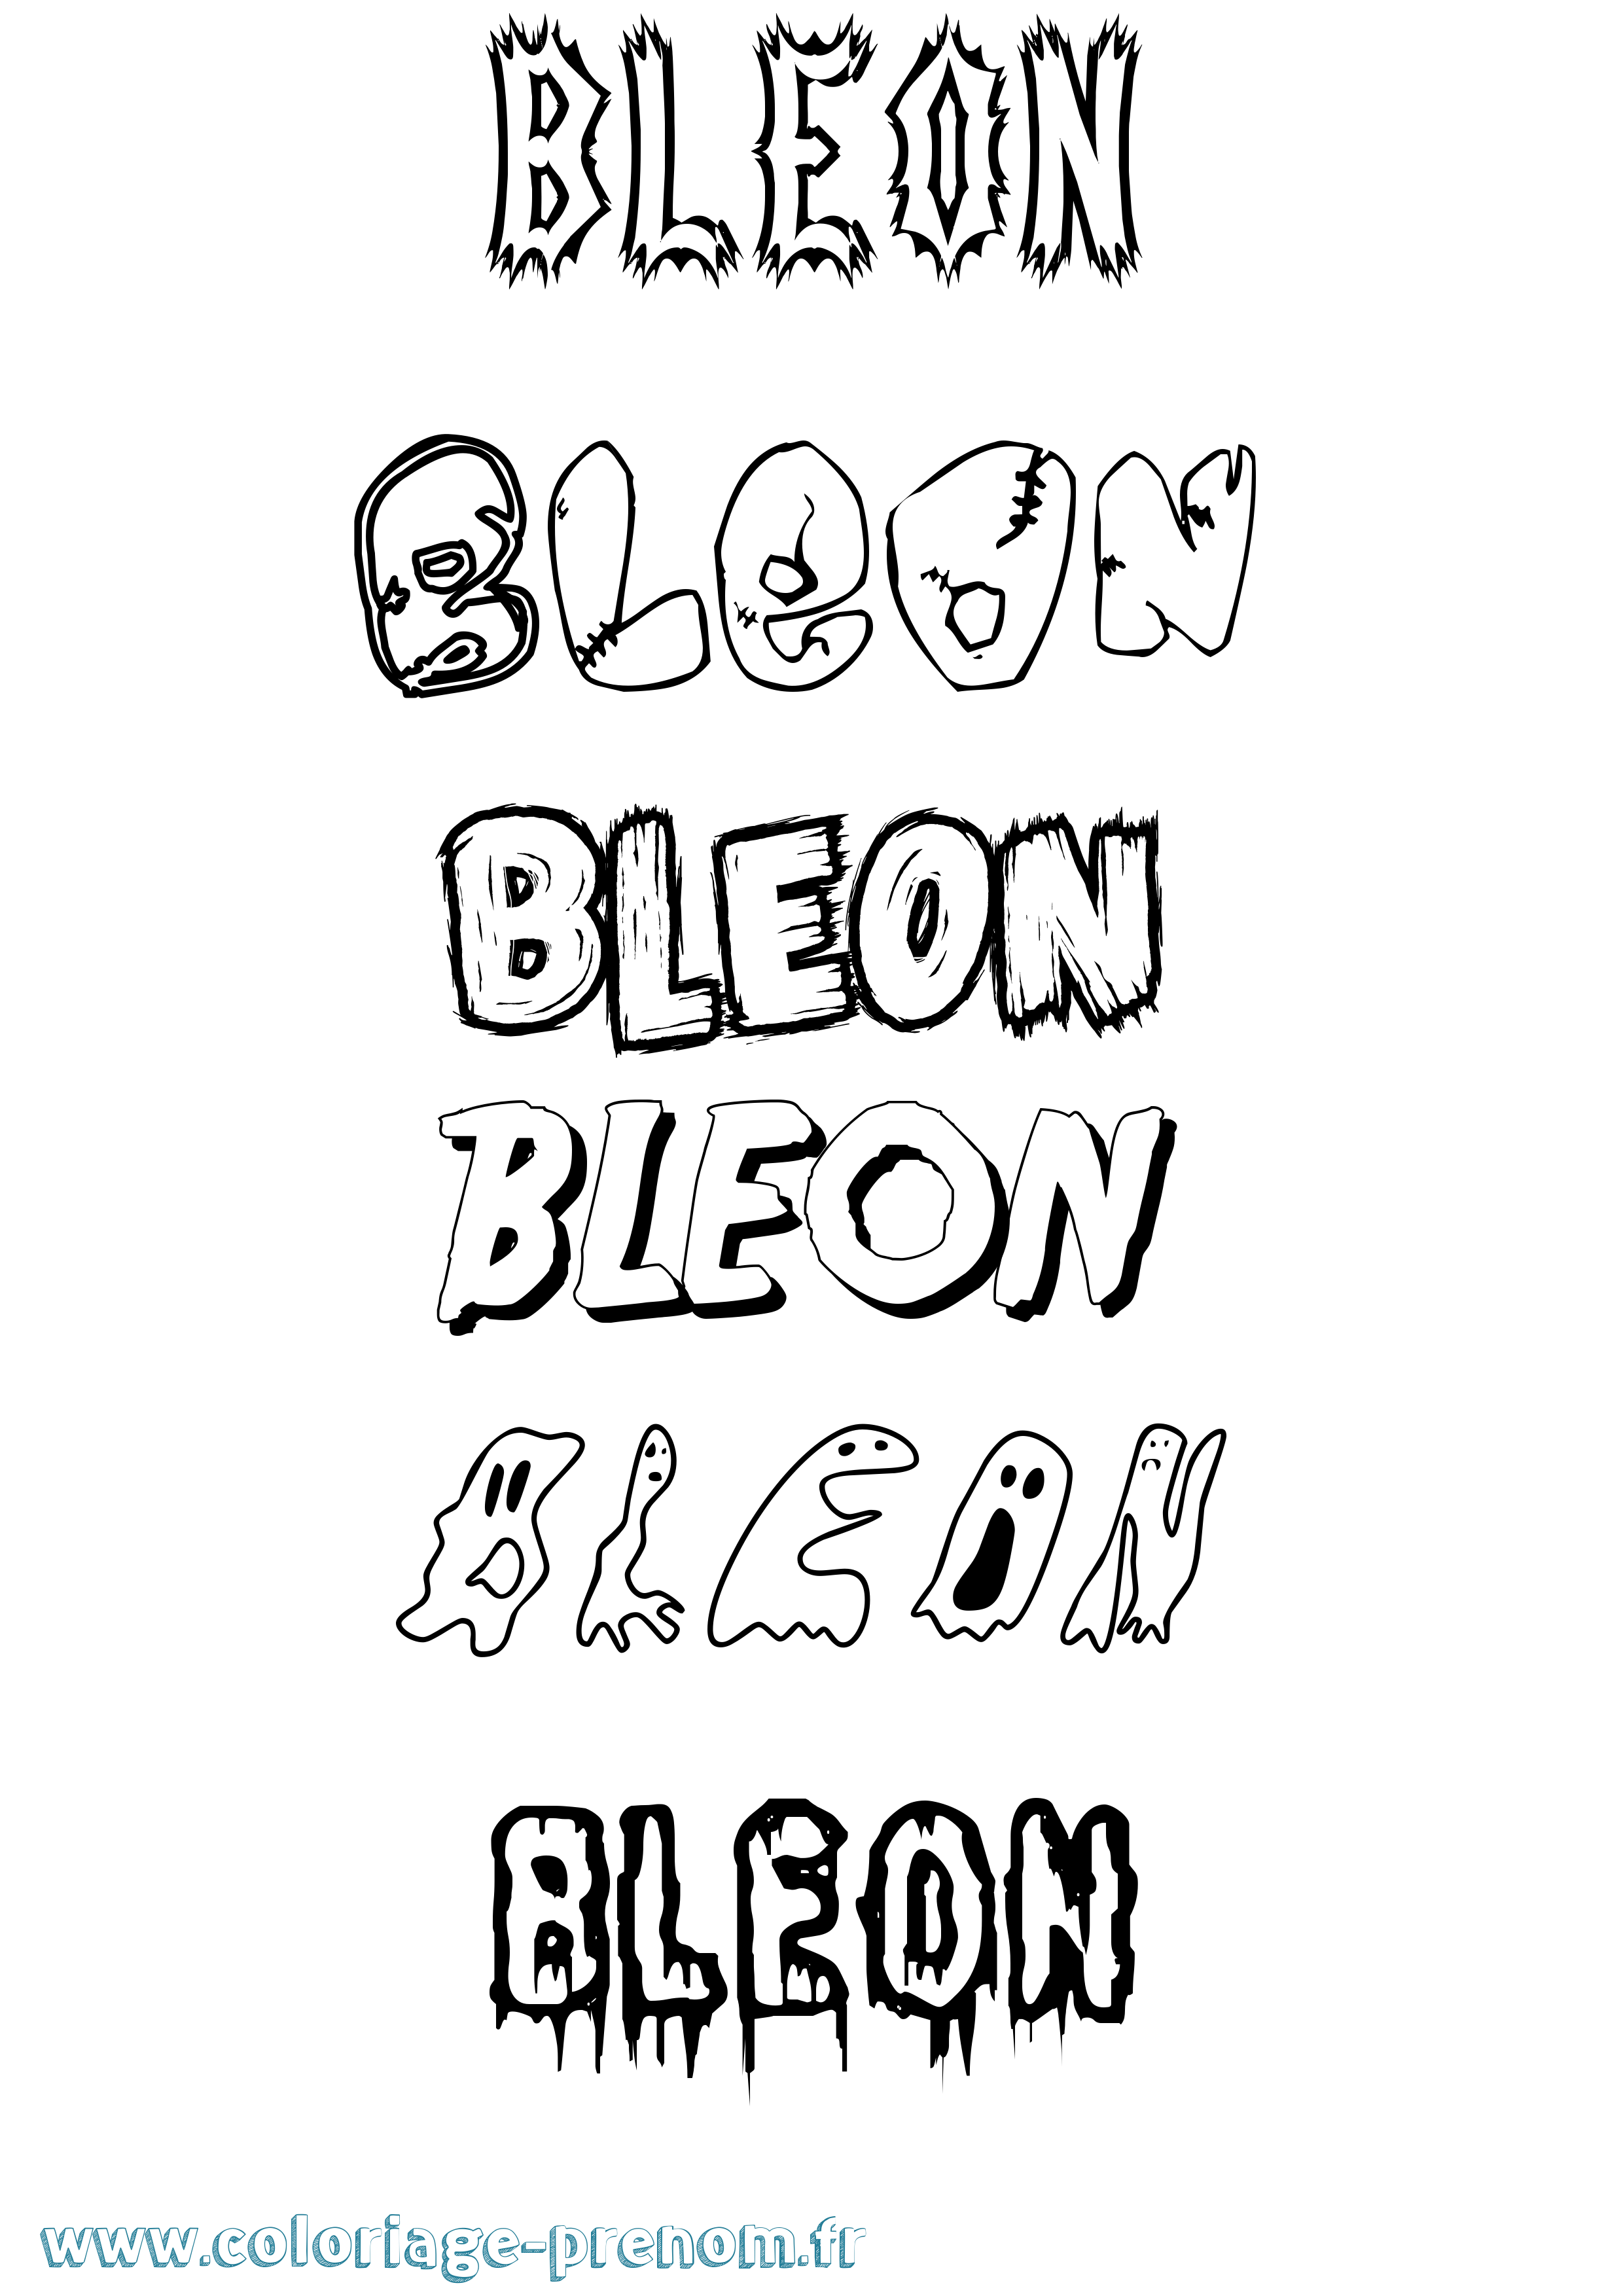 Coloriage prénom Bleon Frisson